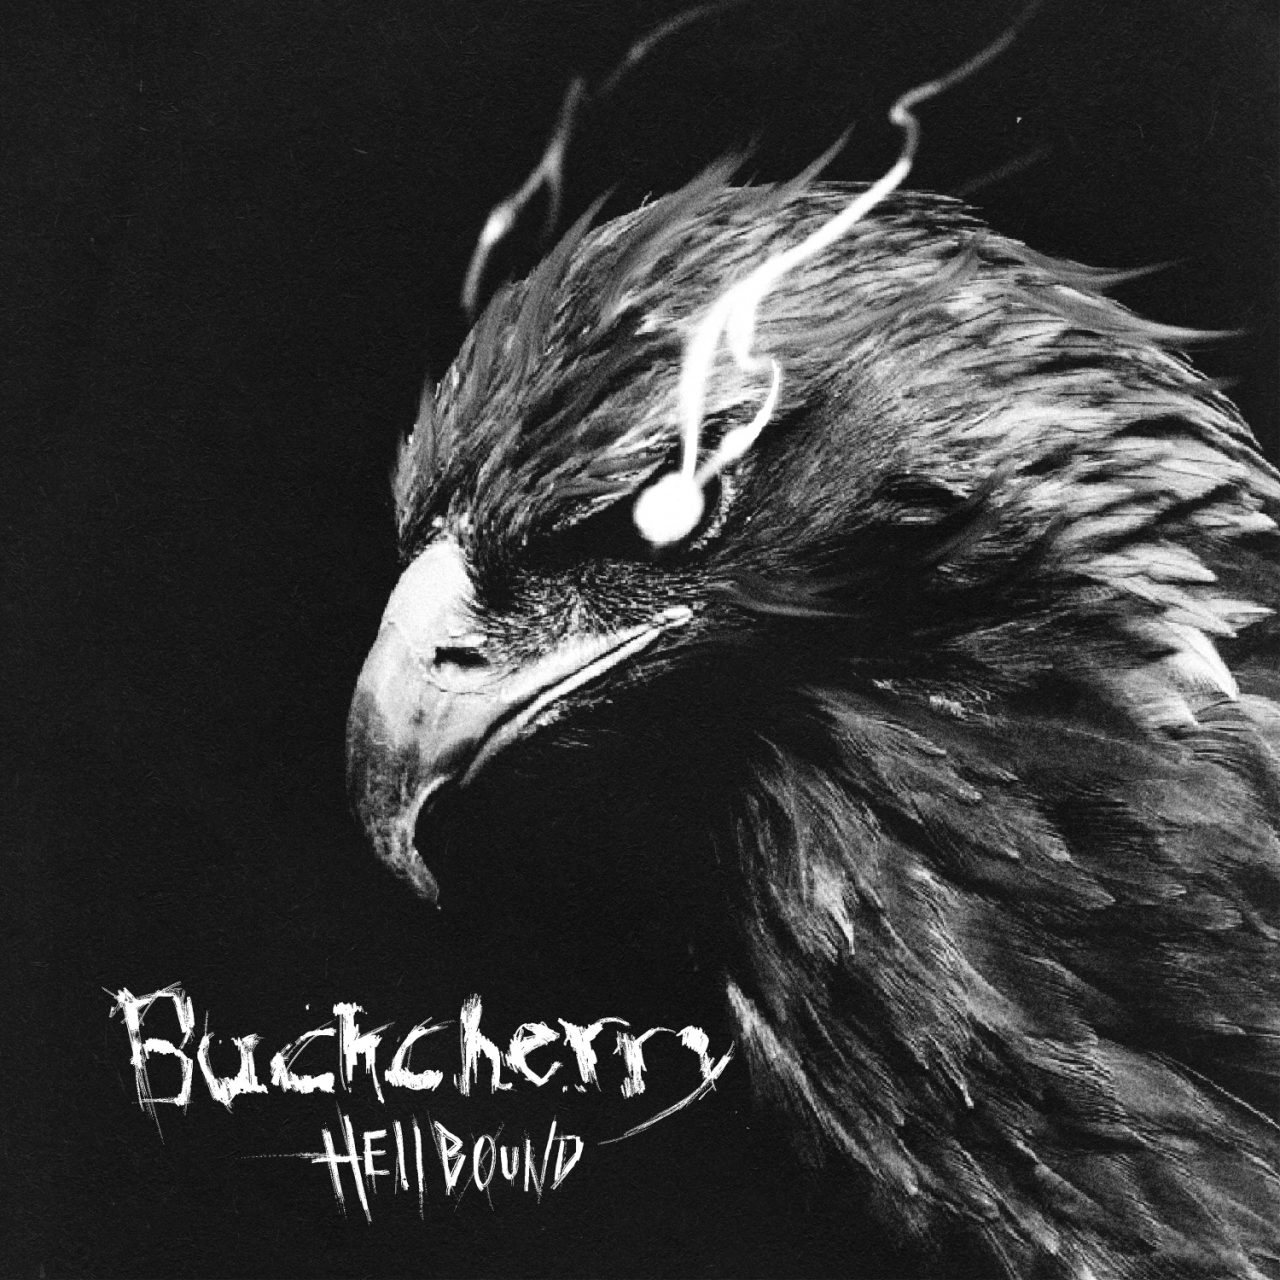 Das Albumcover "Hellbound" von Buckcherry ist schwarz-weiß und zeigt einen Adler, aus dessen Augen Rauch kommt.